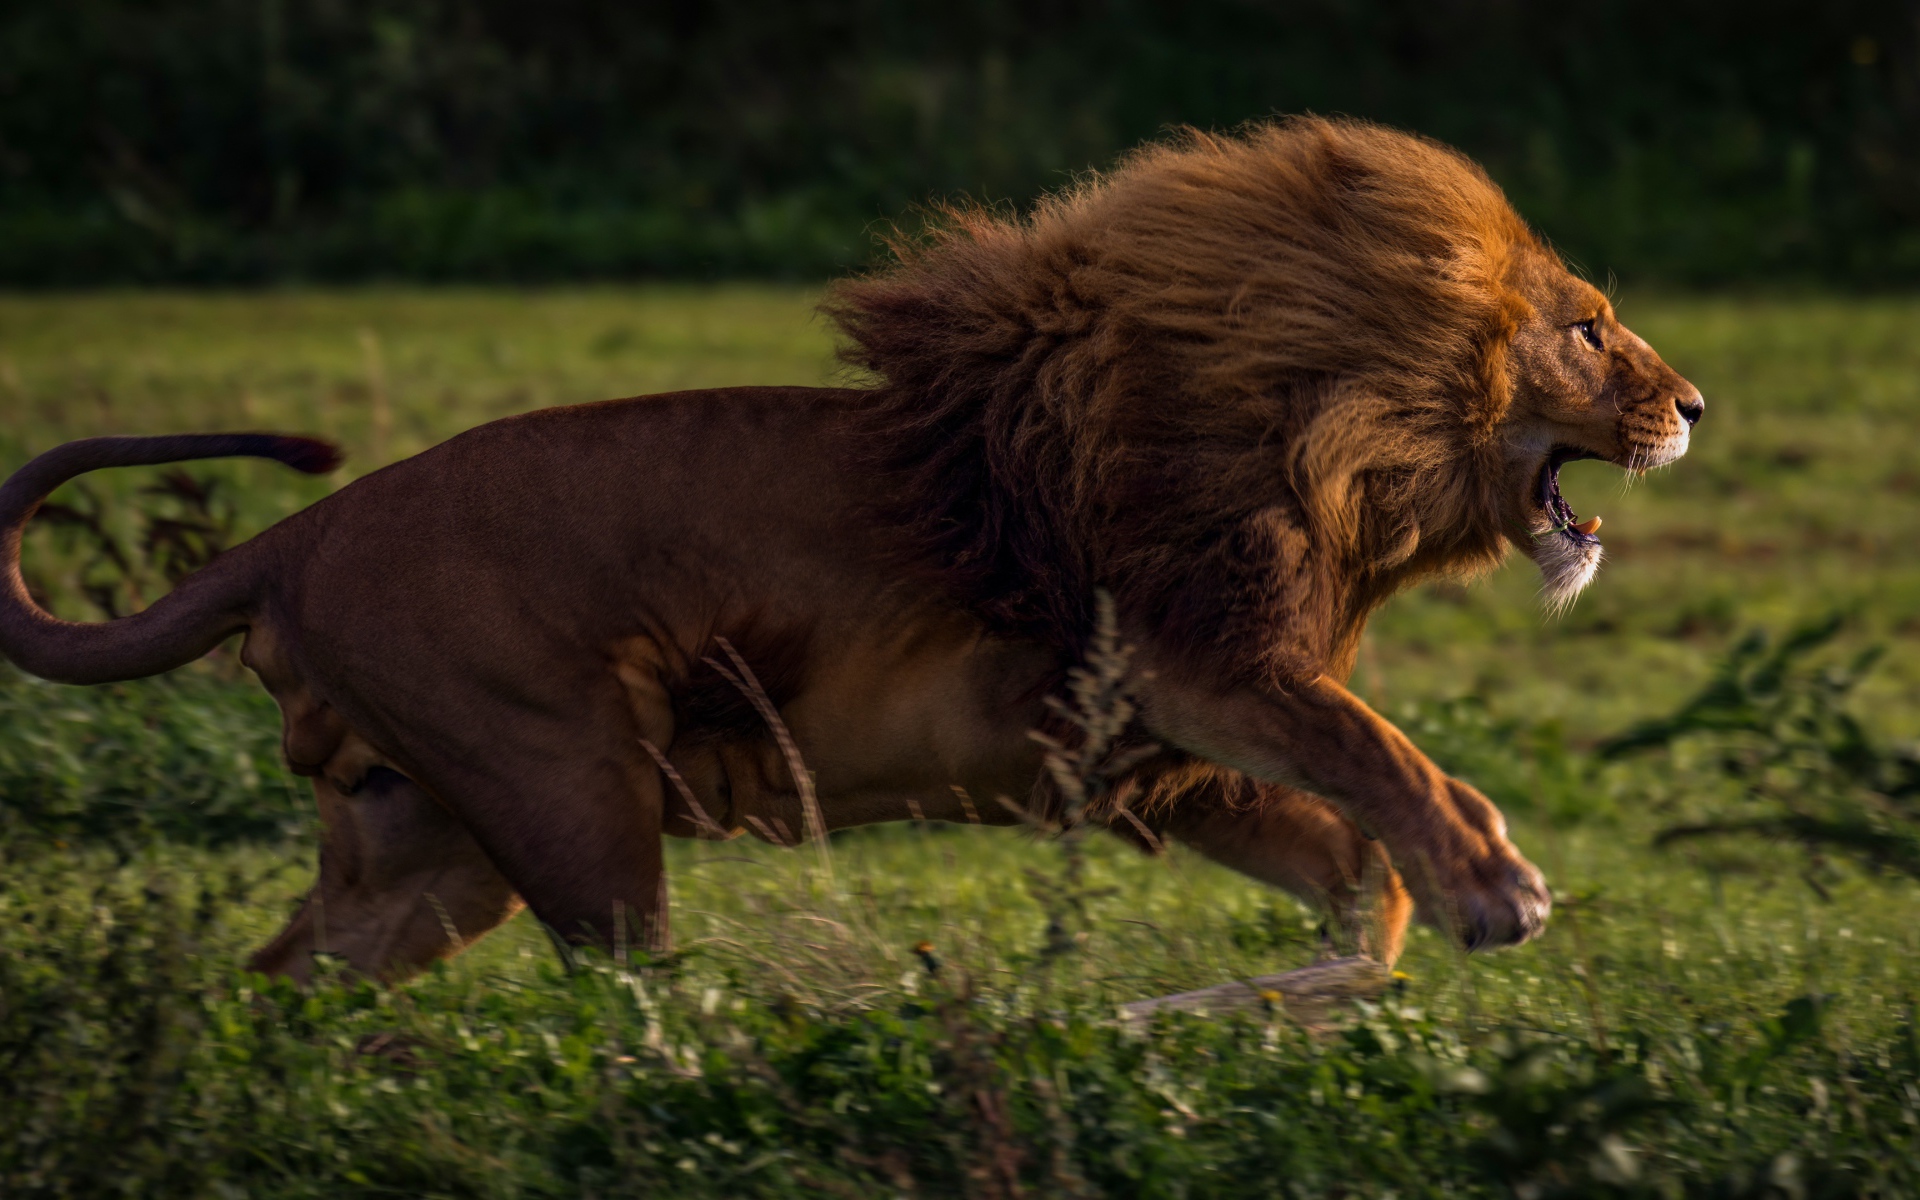 A large lion runs along the green grass